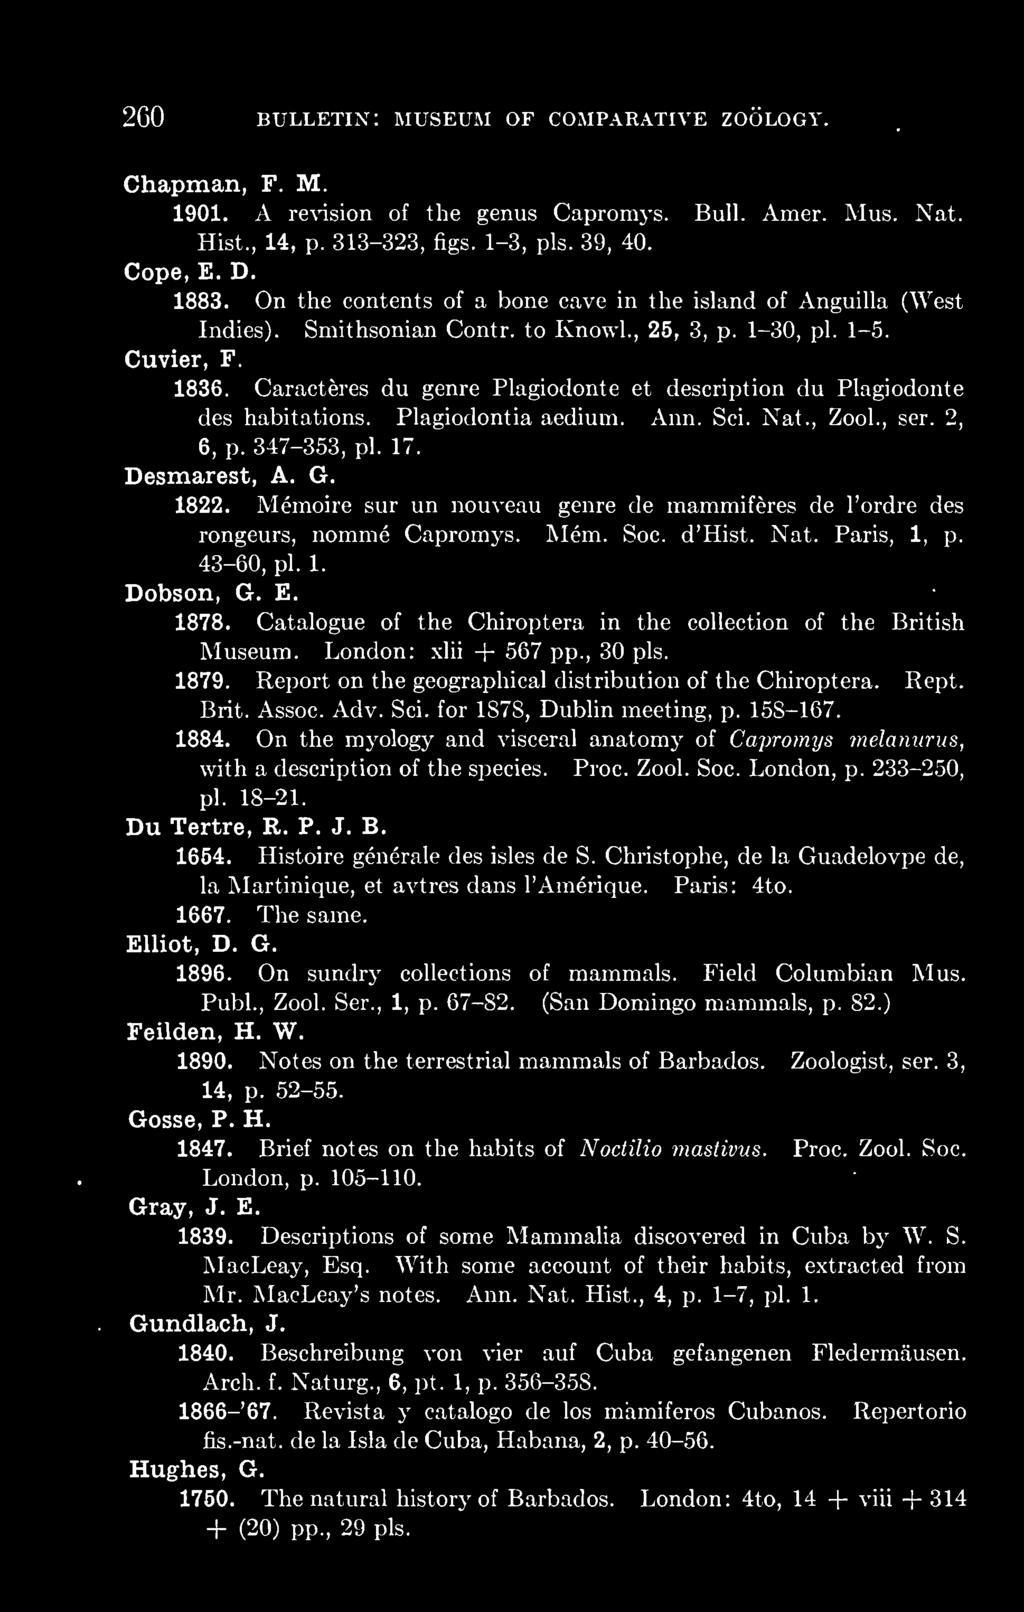 Caracteres du genre Plagiodonte et description du Plagiodonte des habitations. Plagiodontia aedium. Ann. Sci. Nat., Zool., ser. 2, 6, p. 347-353, pi. 17. Desmarest, A. G. 1822.